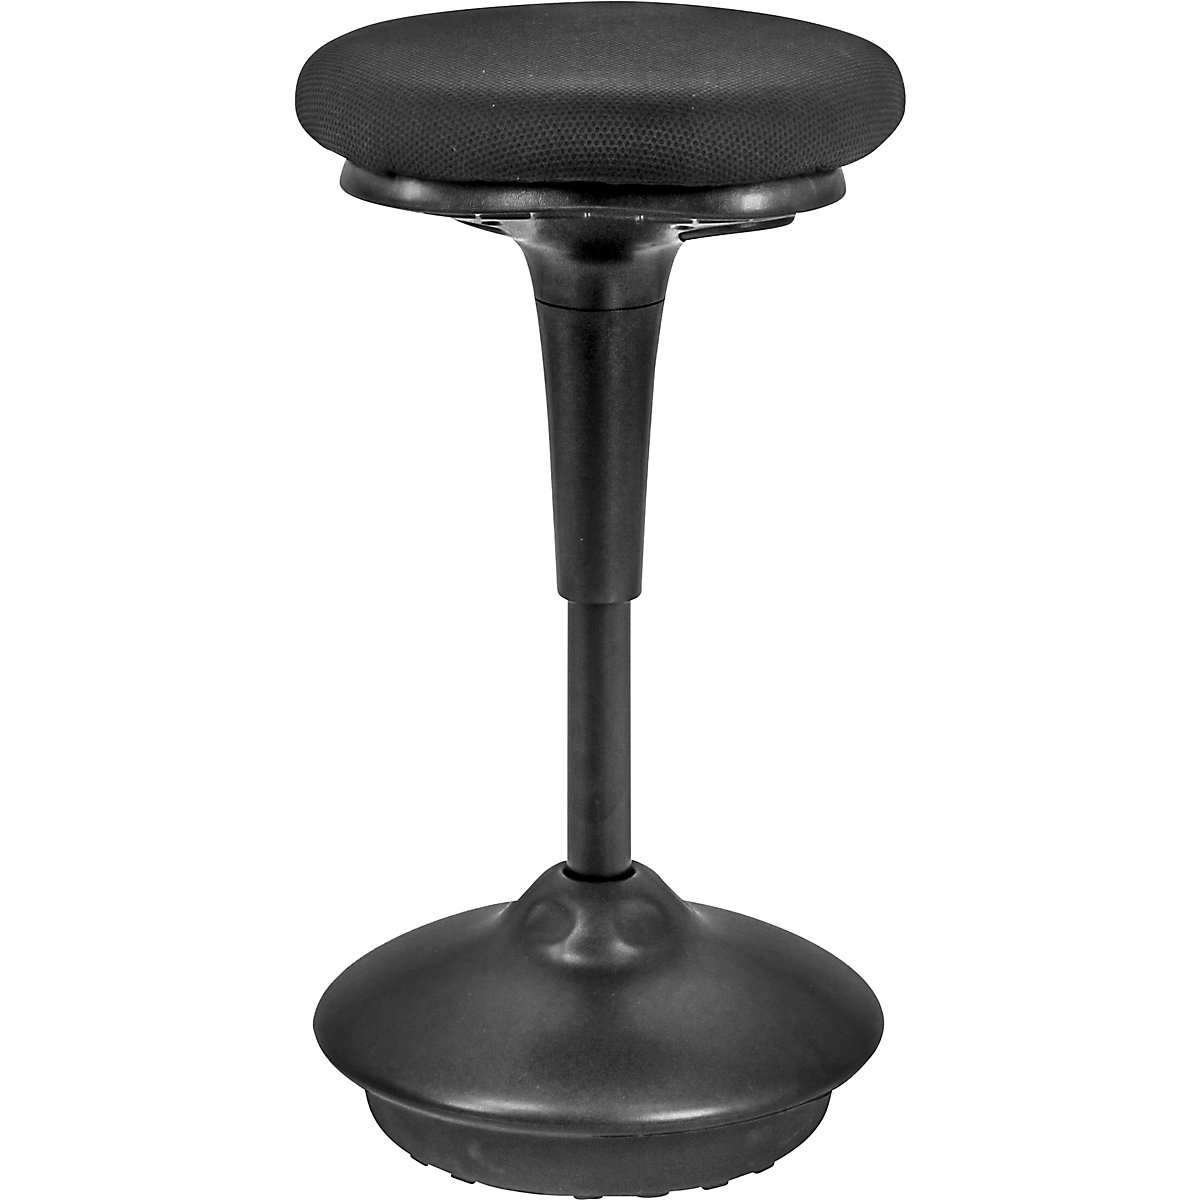 Visoka stolica 6131 – Twinco, okruglo sjedalo Ø 340 mm, presvlaka u crnoj boji-5